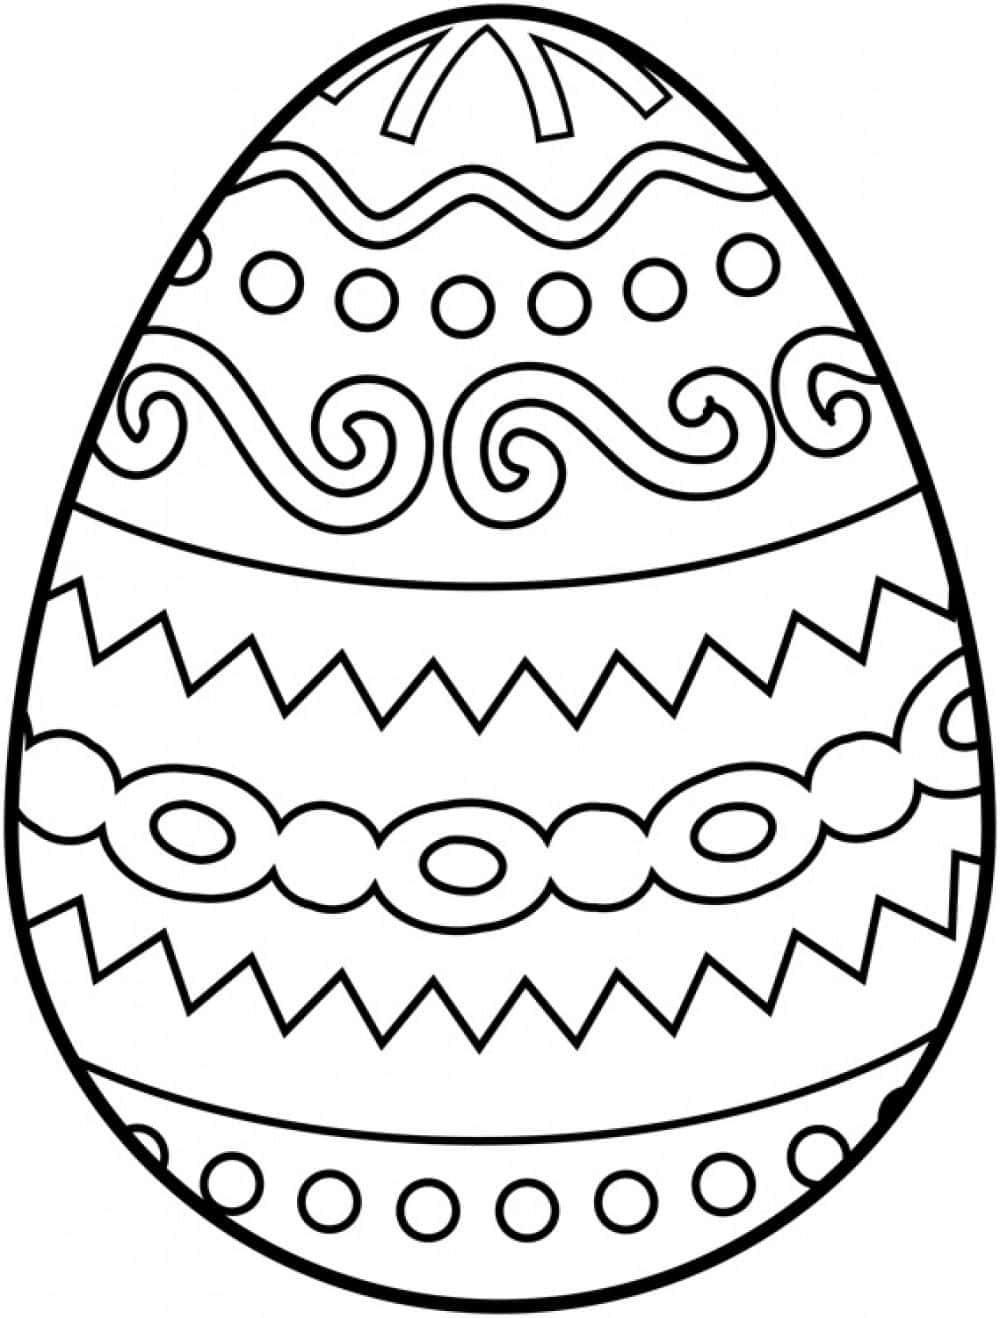 Designdell'uovo Di Pasqua Immagine Da Colorare Di Pasqua